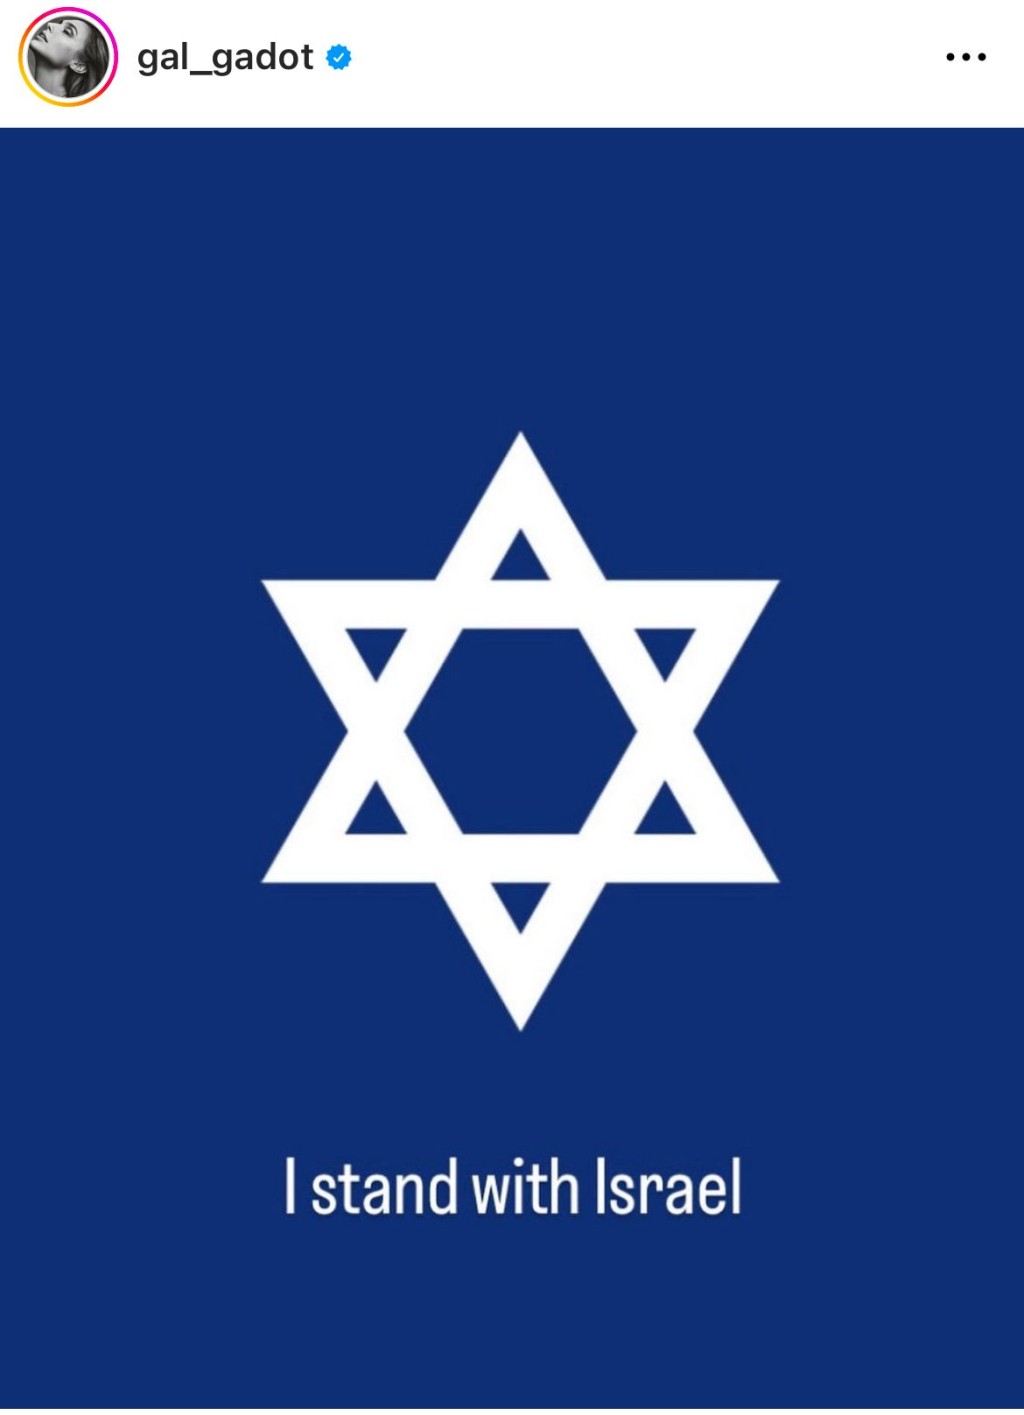 姬嘉鐸發大衛星圖表態支持以色列。Instagram